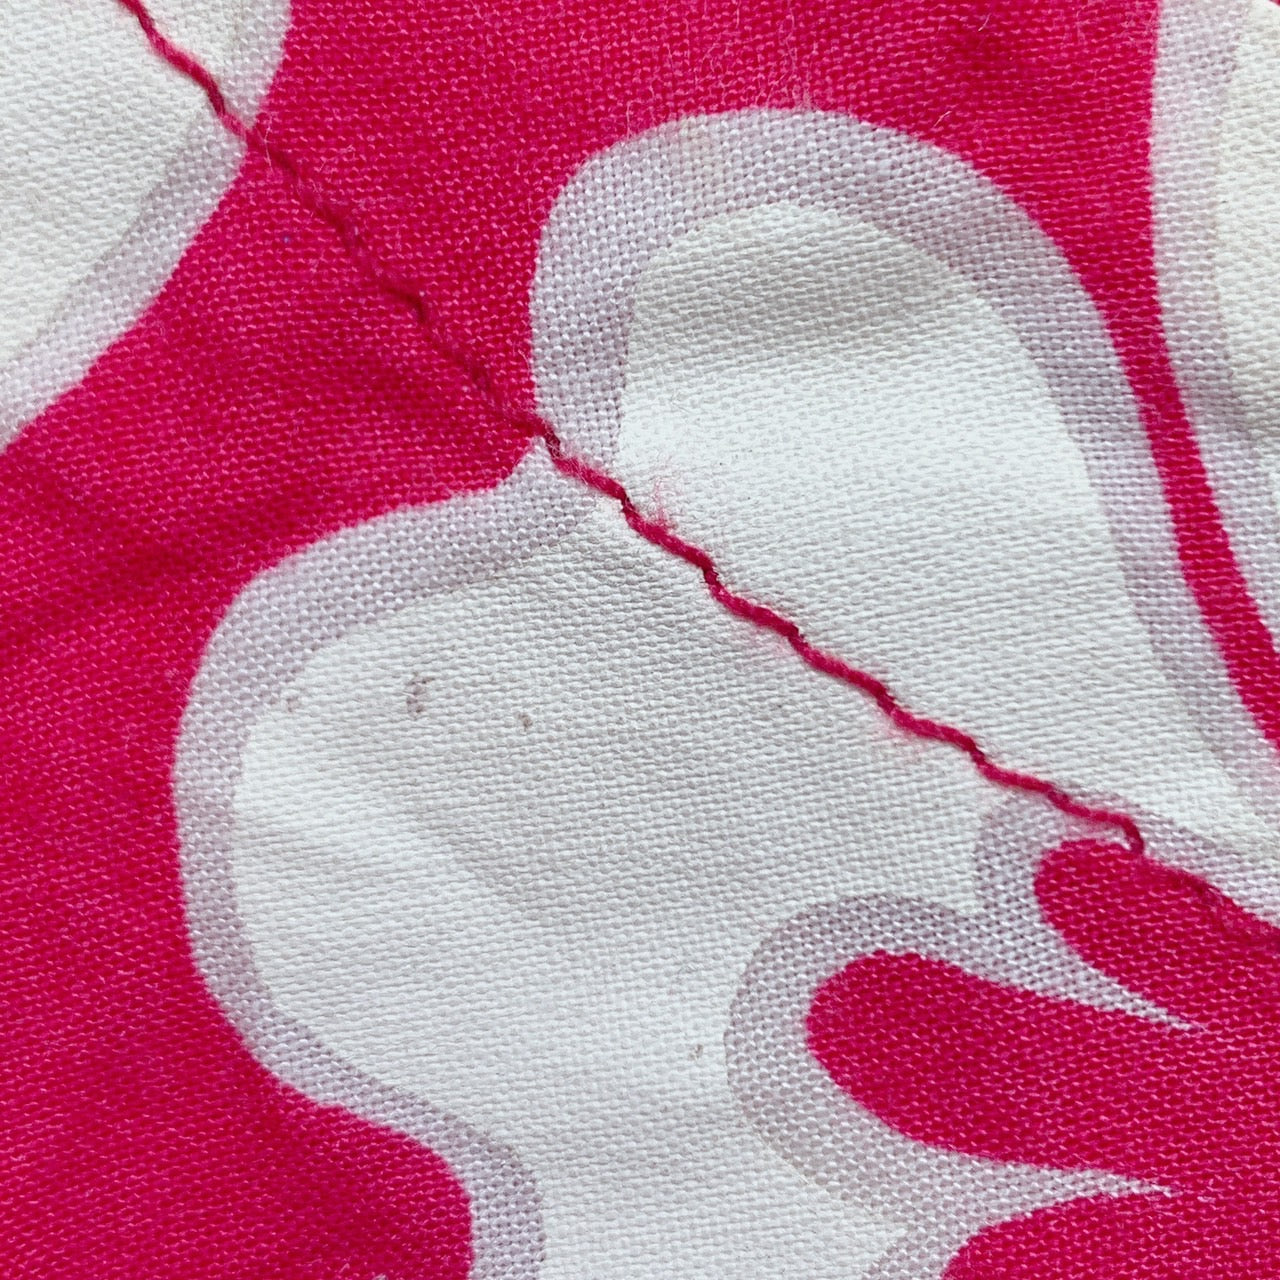 【26418】 半袖シャツ ピンク カジュアル ハワイアン かわいい リゾート 夏 花柄 上品 涼しげ おしゃれ 丸首 丈短め 重ね着 レディース